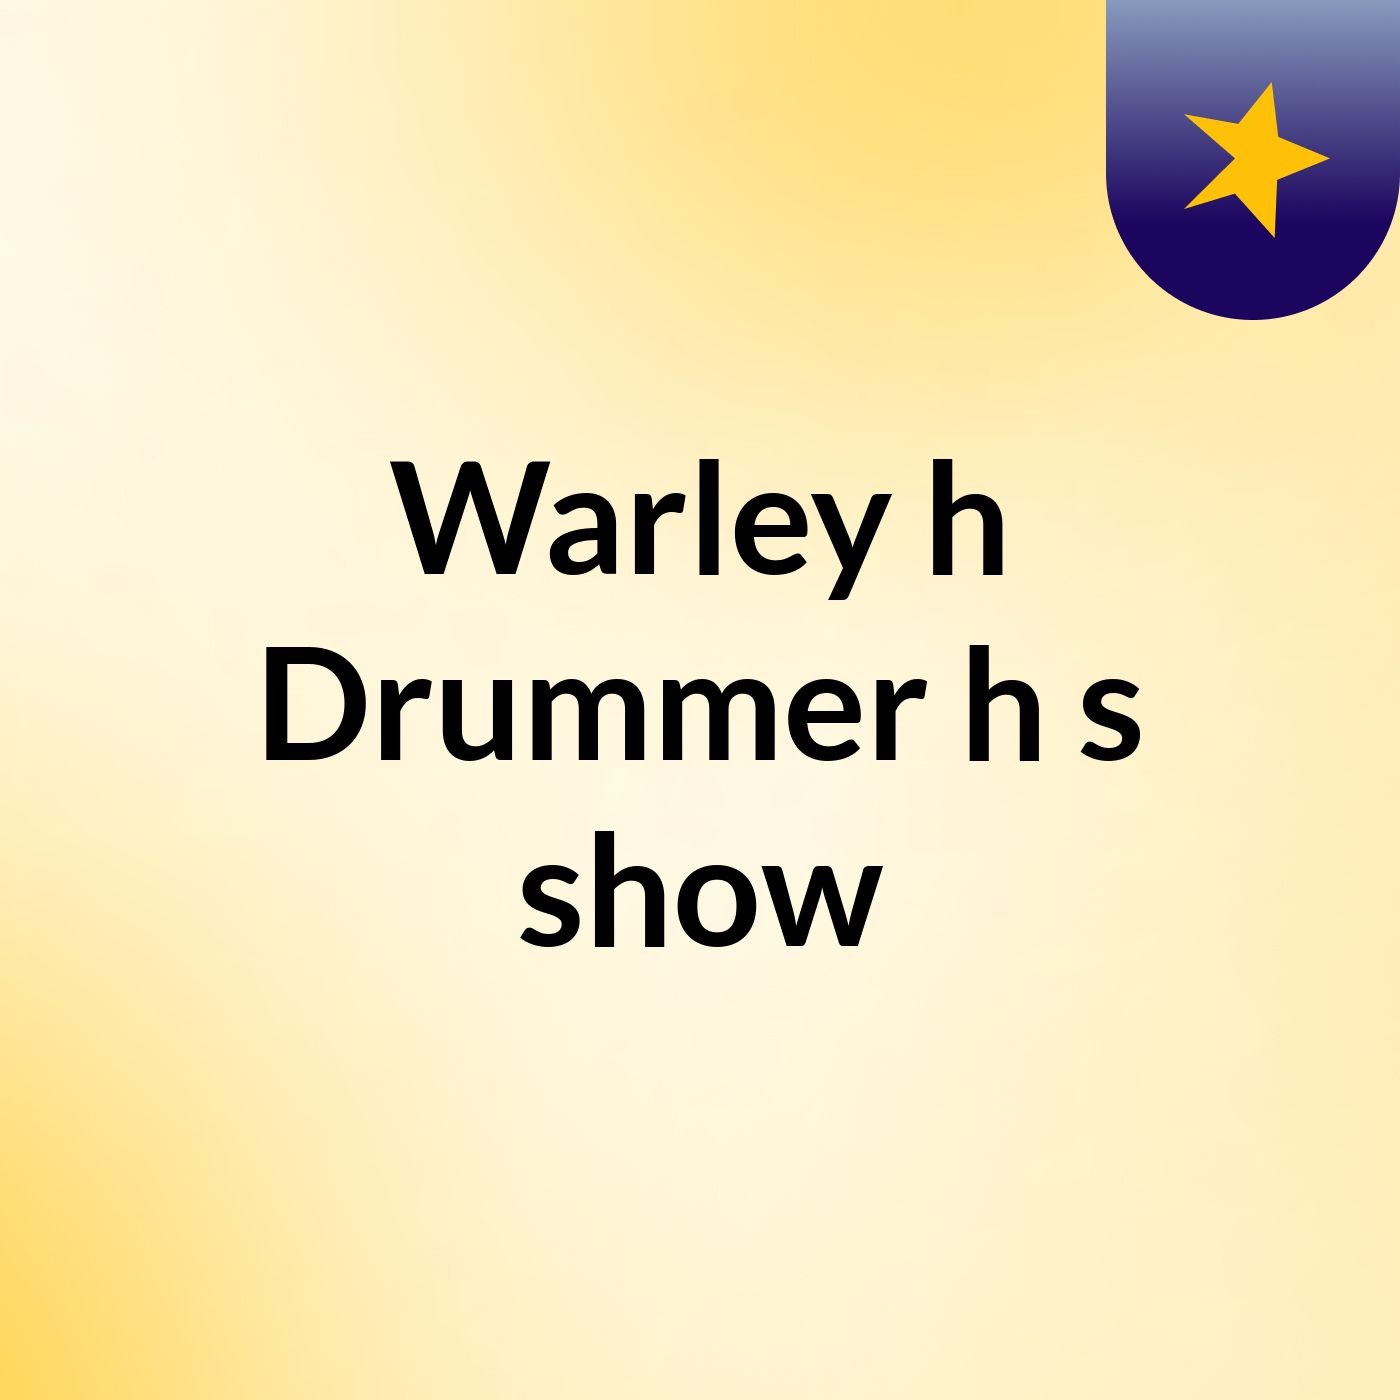 Warley'h Drummer'h's show